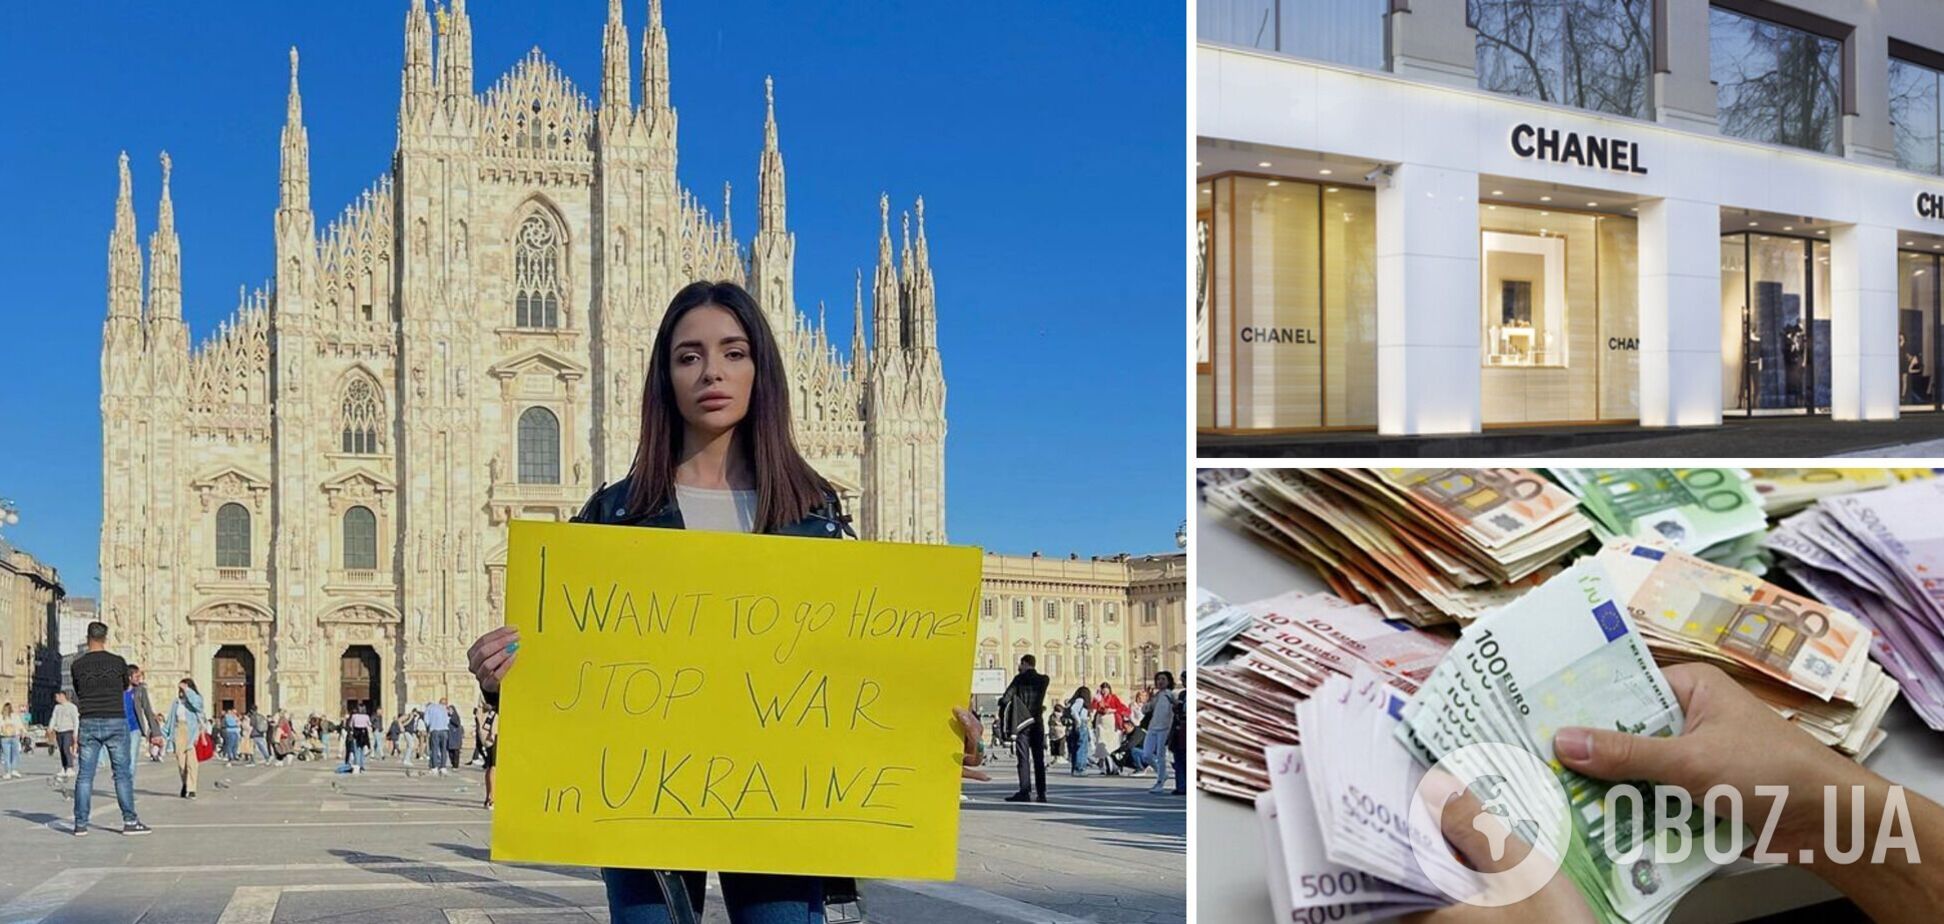 Сбежавшая в Италию Надин Медведчук из 'Холостяка' попала в скандал из-за сумки Сhanel и выплаты беженцам